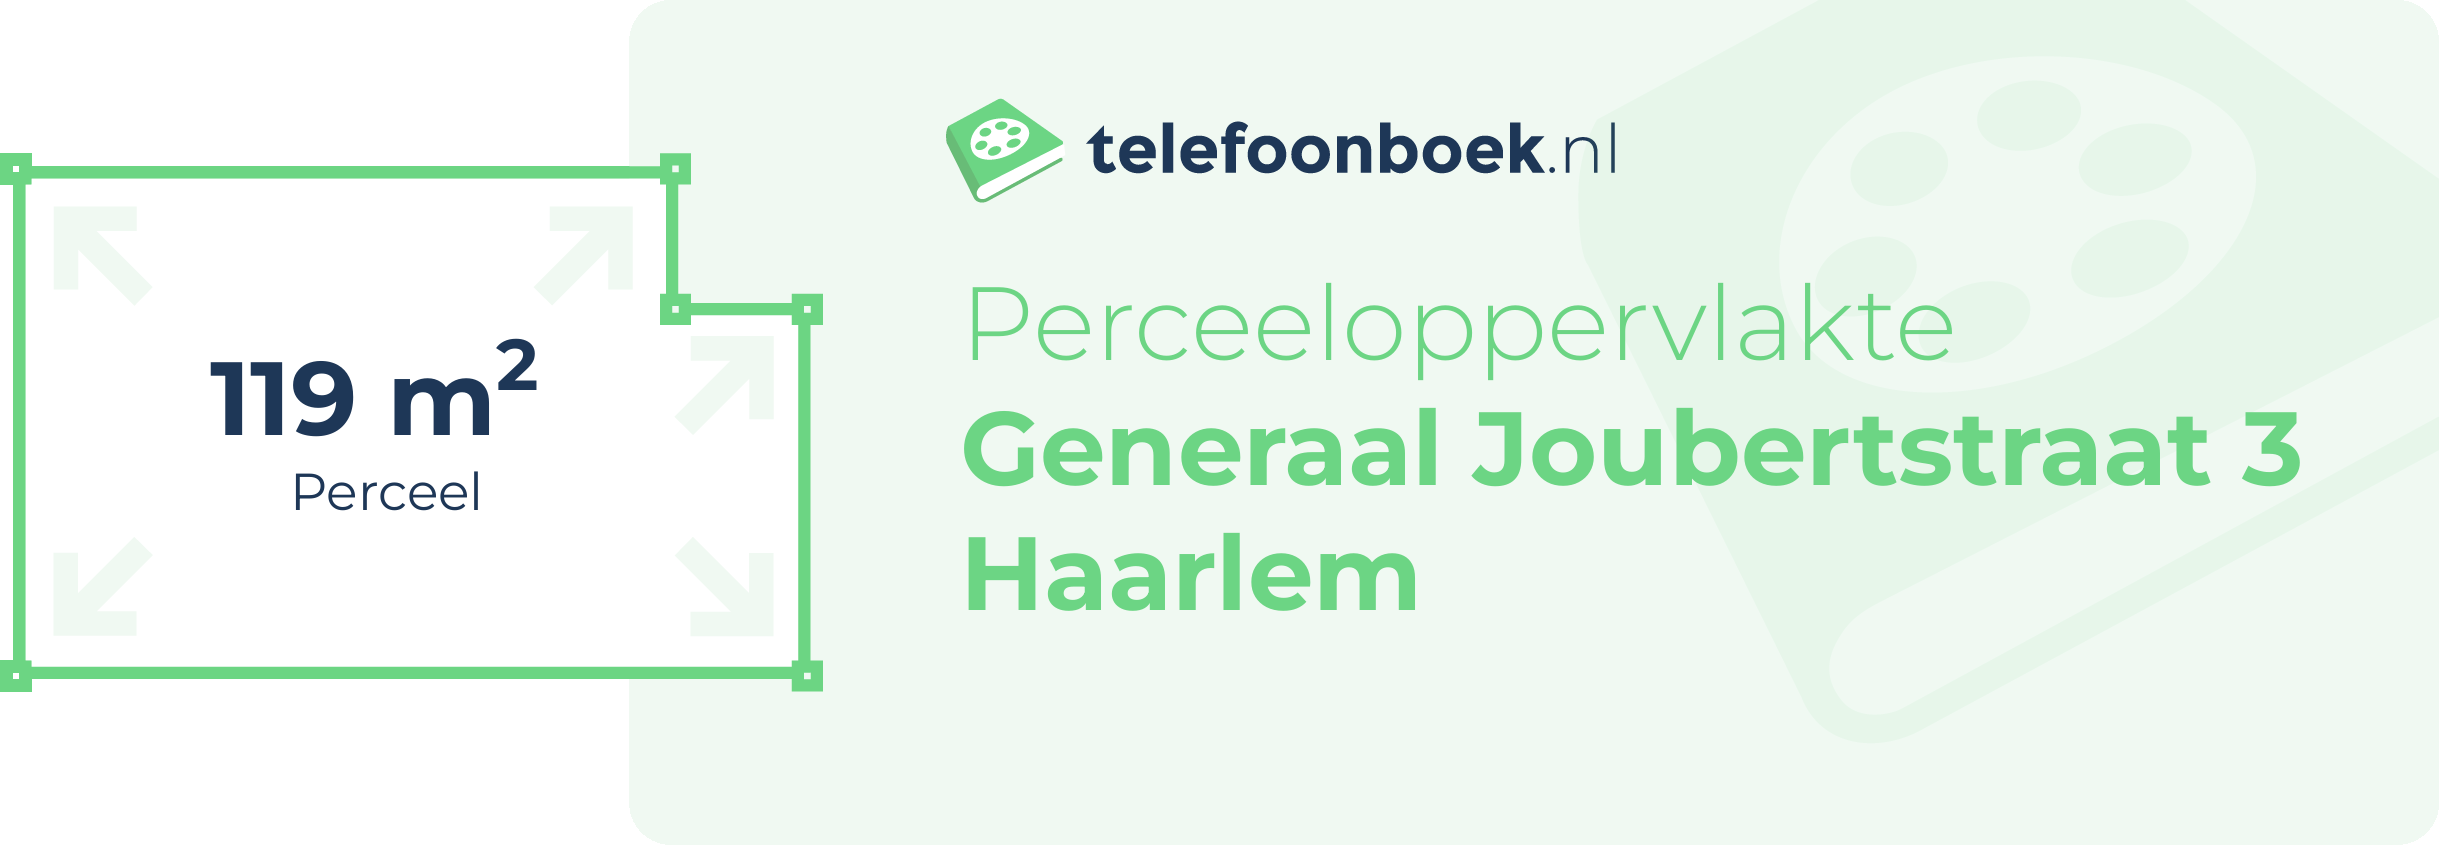 Perceeloppervlakte Generaal Joubertstraat 3 Haarlem